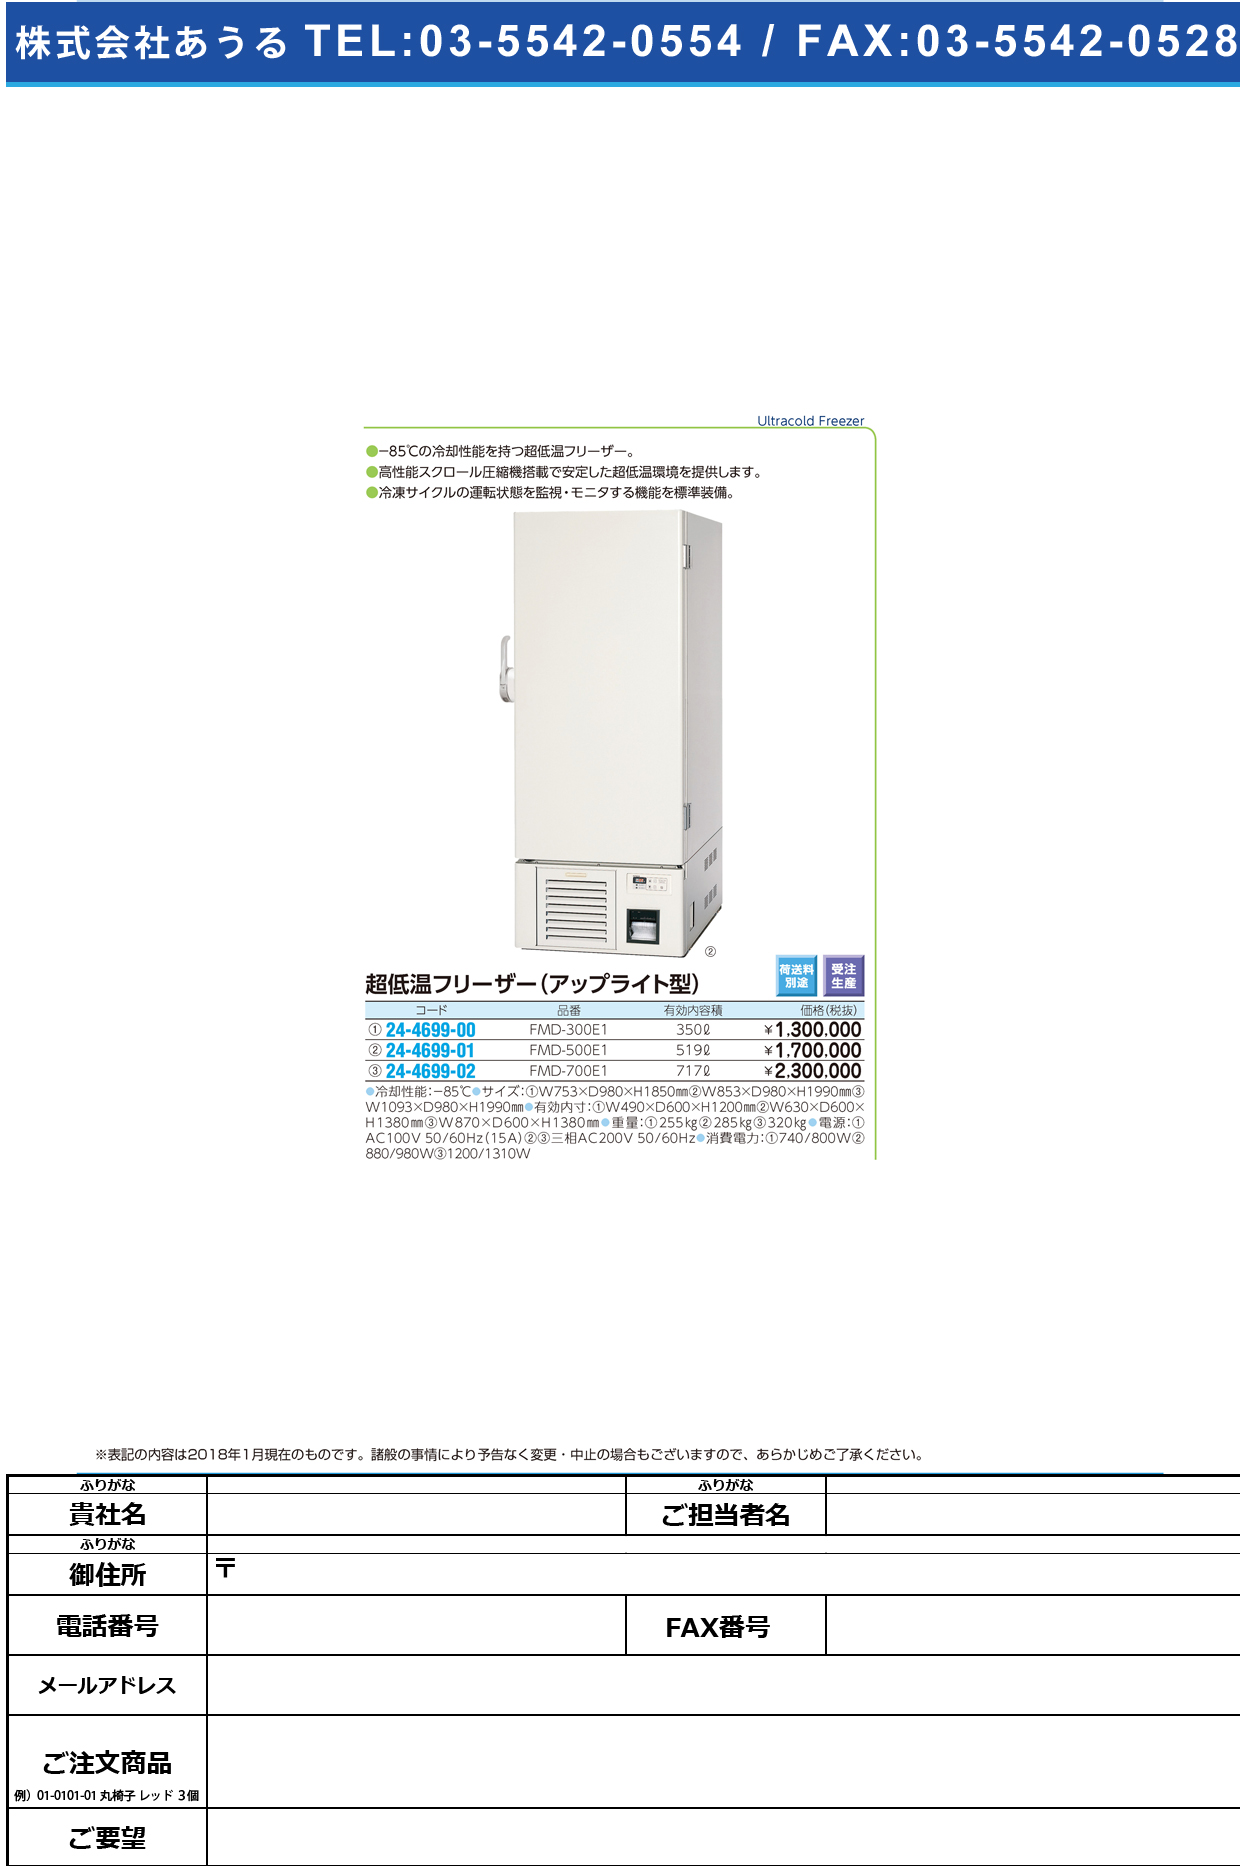 (24-4699-02)超低温フリーザー（アップライト型） FMD-700E1 ﾁｮｳﾃｲｵﾝﾌﾘｰｻﾞｰ(福島工業)【1台単位】【2018年カタログ商品】